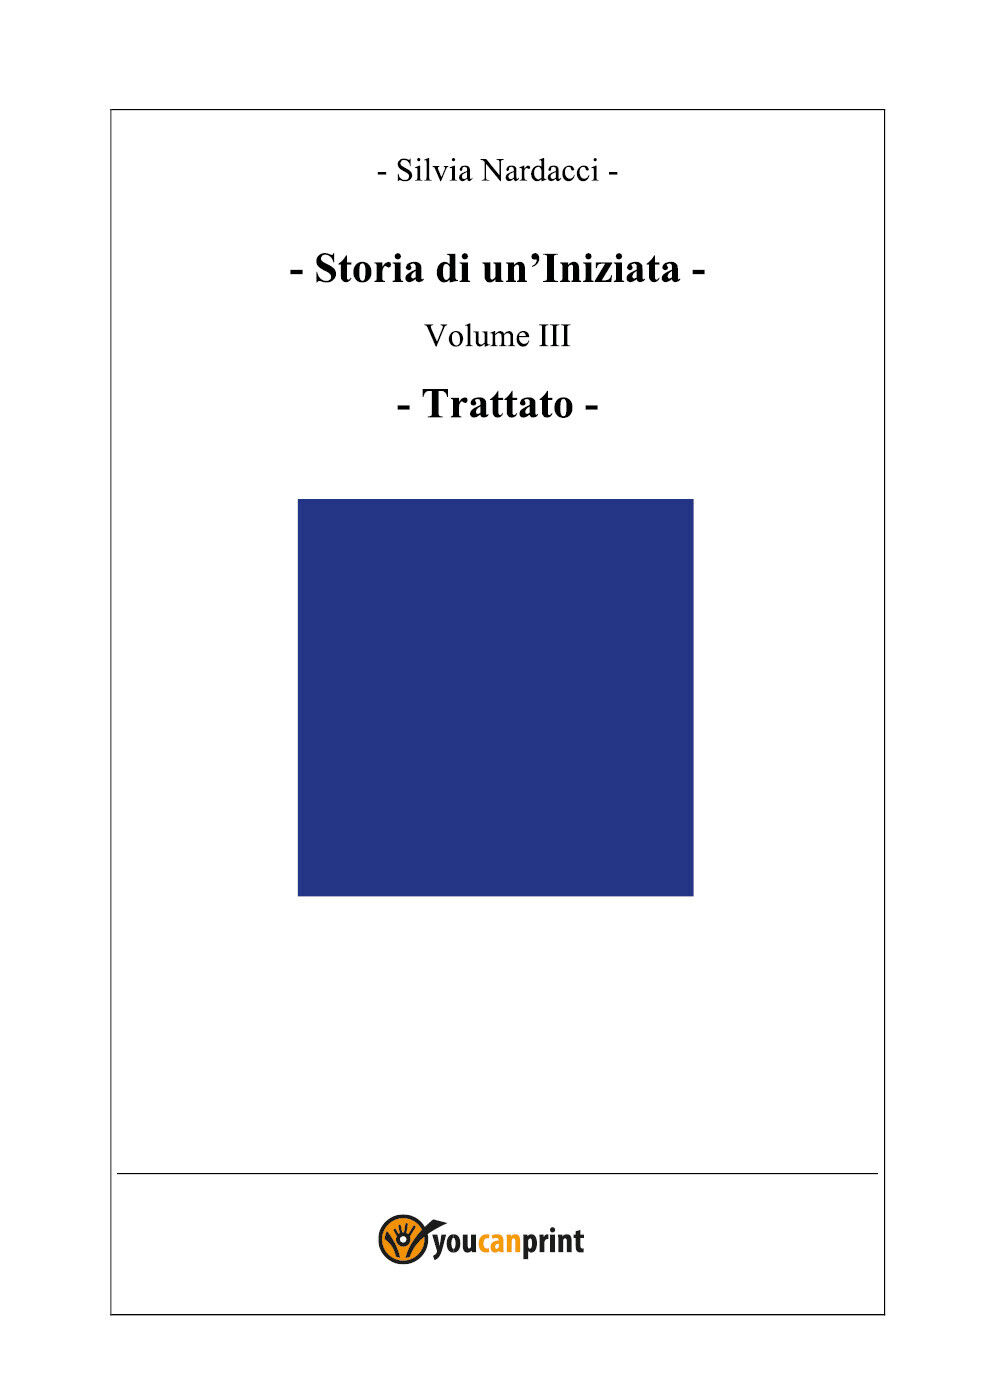 Storia di un?Iniziata - Volume III - Trattato (seconda edizione) di Silvia Narda